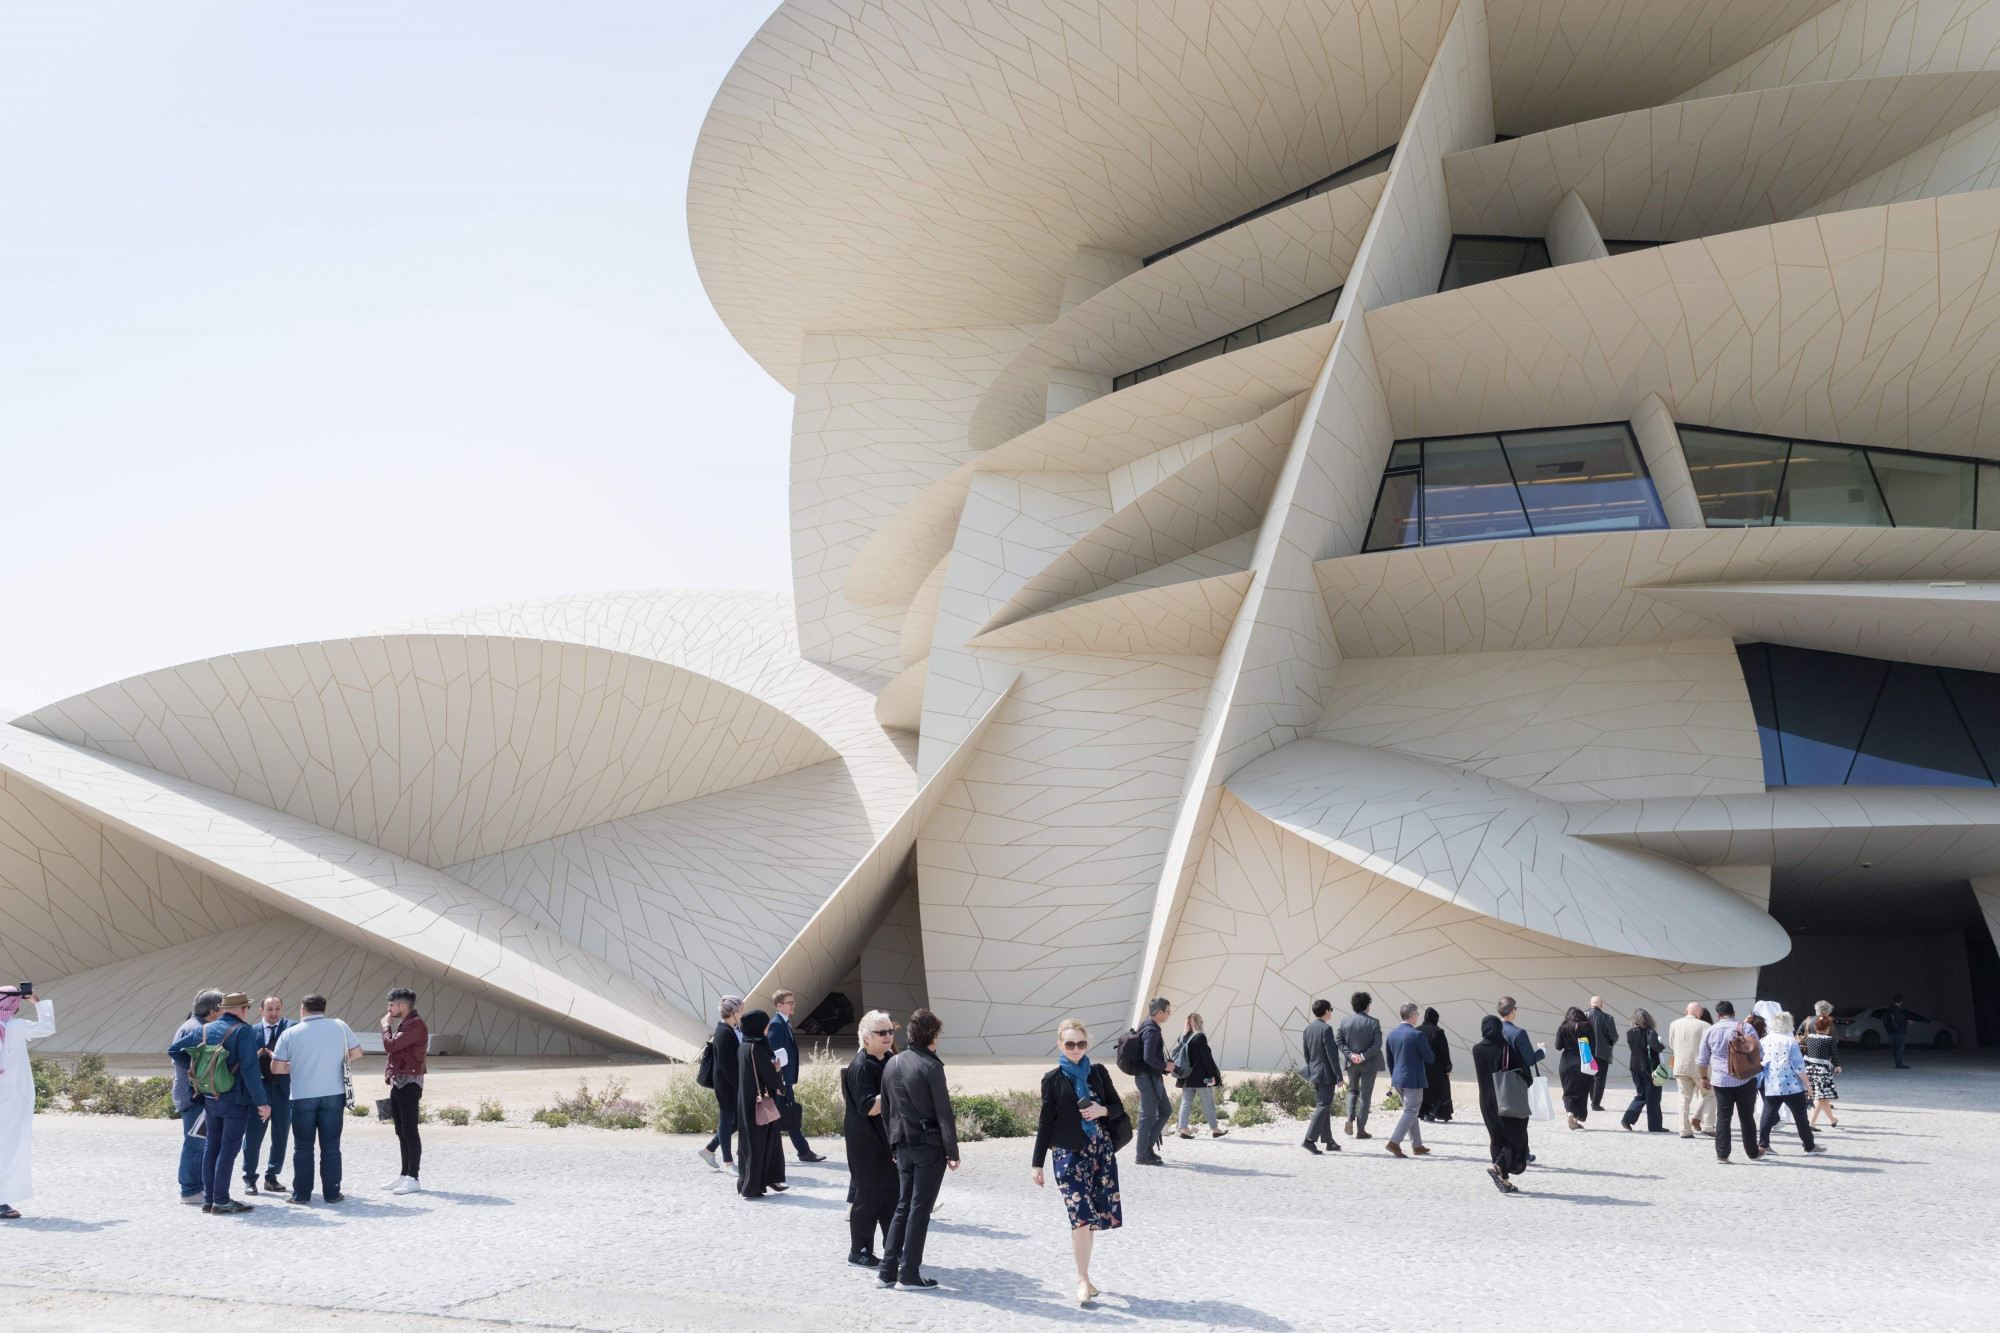 Được thiết kế bởi kiến ​​trúc sư đoạt giải Pritzker Jean Nouvel, người cũng là người đứng sau bảo tàng Louvre Abu Dhabi , tòa nhà trị giá 434 triệu USD này là một dãy các hình đĩa cong, các góc đúc hẫng và các nút giao cắt đáng ngạc nhiên, đồng thời được lấy cảm hứng từ các cụm pha lê “hoa hồng sa mạc” hình thành trong sa mạc Qatar.  Khách mời nổi tiếng tại lễ khai mạc xa hoa bao gồm Johnny Depp, Naomi Campbell và Victoria Beckham. Tờ UK Times gọi đây là “tòa nhà phi thường nhất thập kỷ”, tờ Financial Times mô tả nó là “bông hồng sa mạc có quy mô đột biến”, trong khi The Guardian tự hỏi liệu “sáng tạo bắt mắt” này có “quá xa hoa để lấp đầy hay không”.  Vậy điều gì ẩn chứa bên trong siêu bảo tàng mới tuyệt vời này?